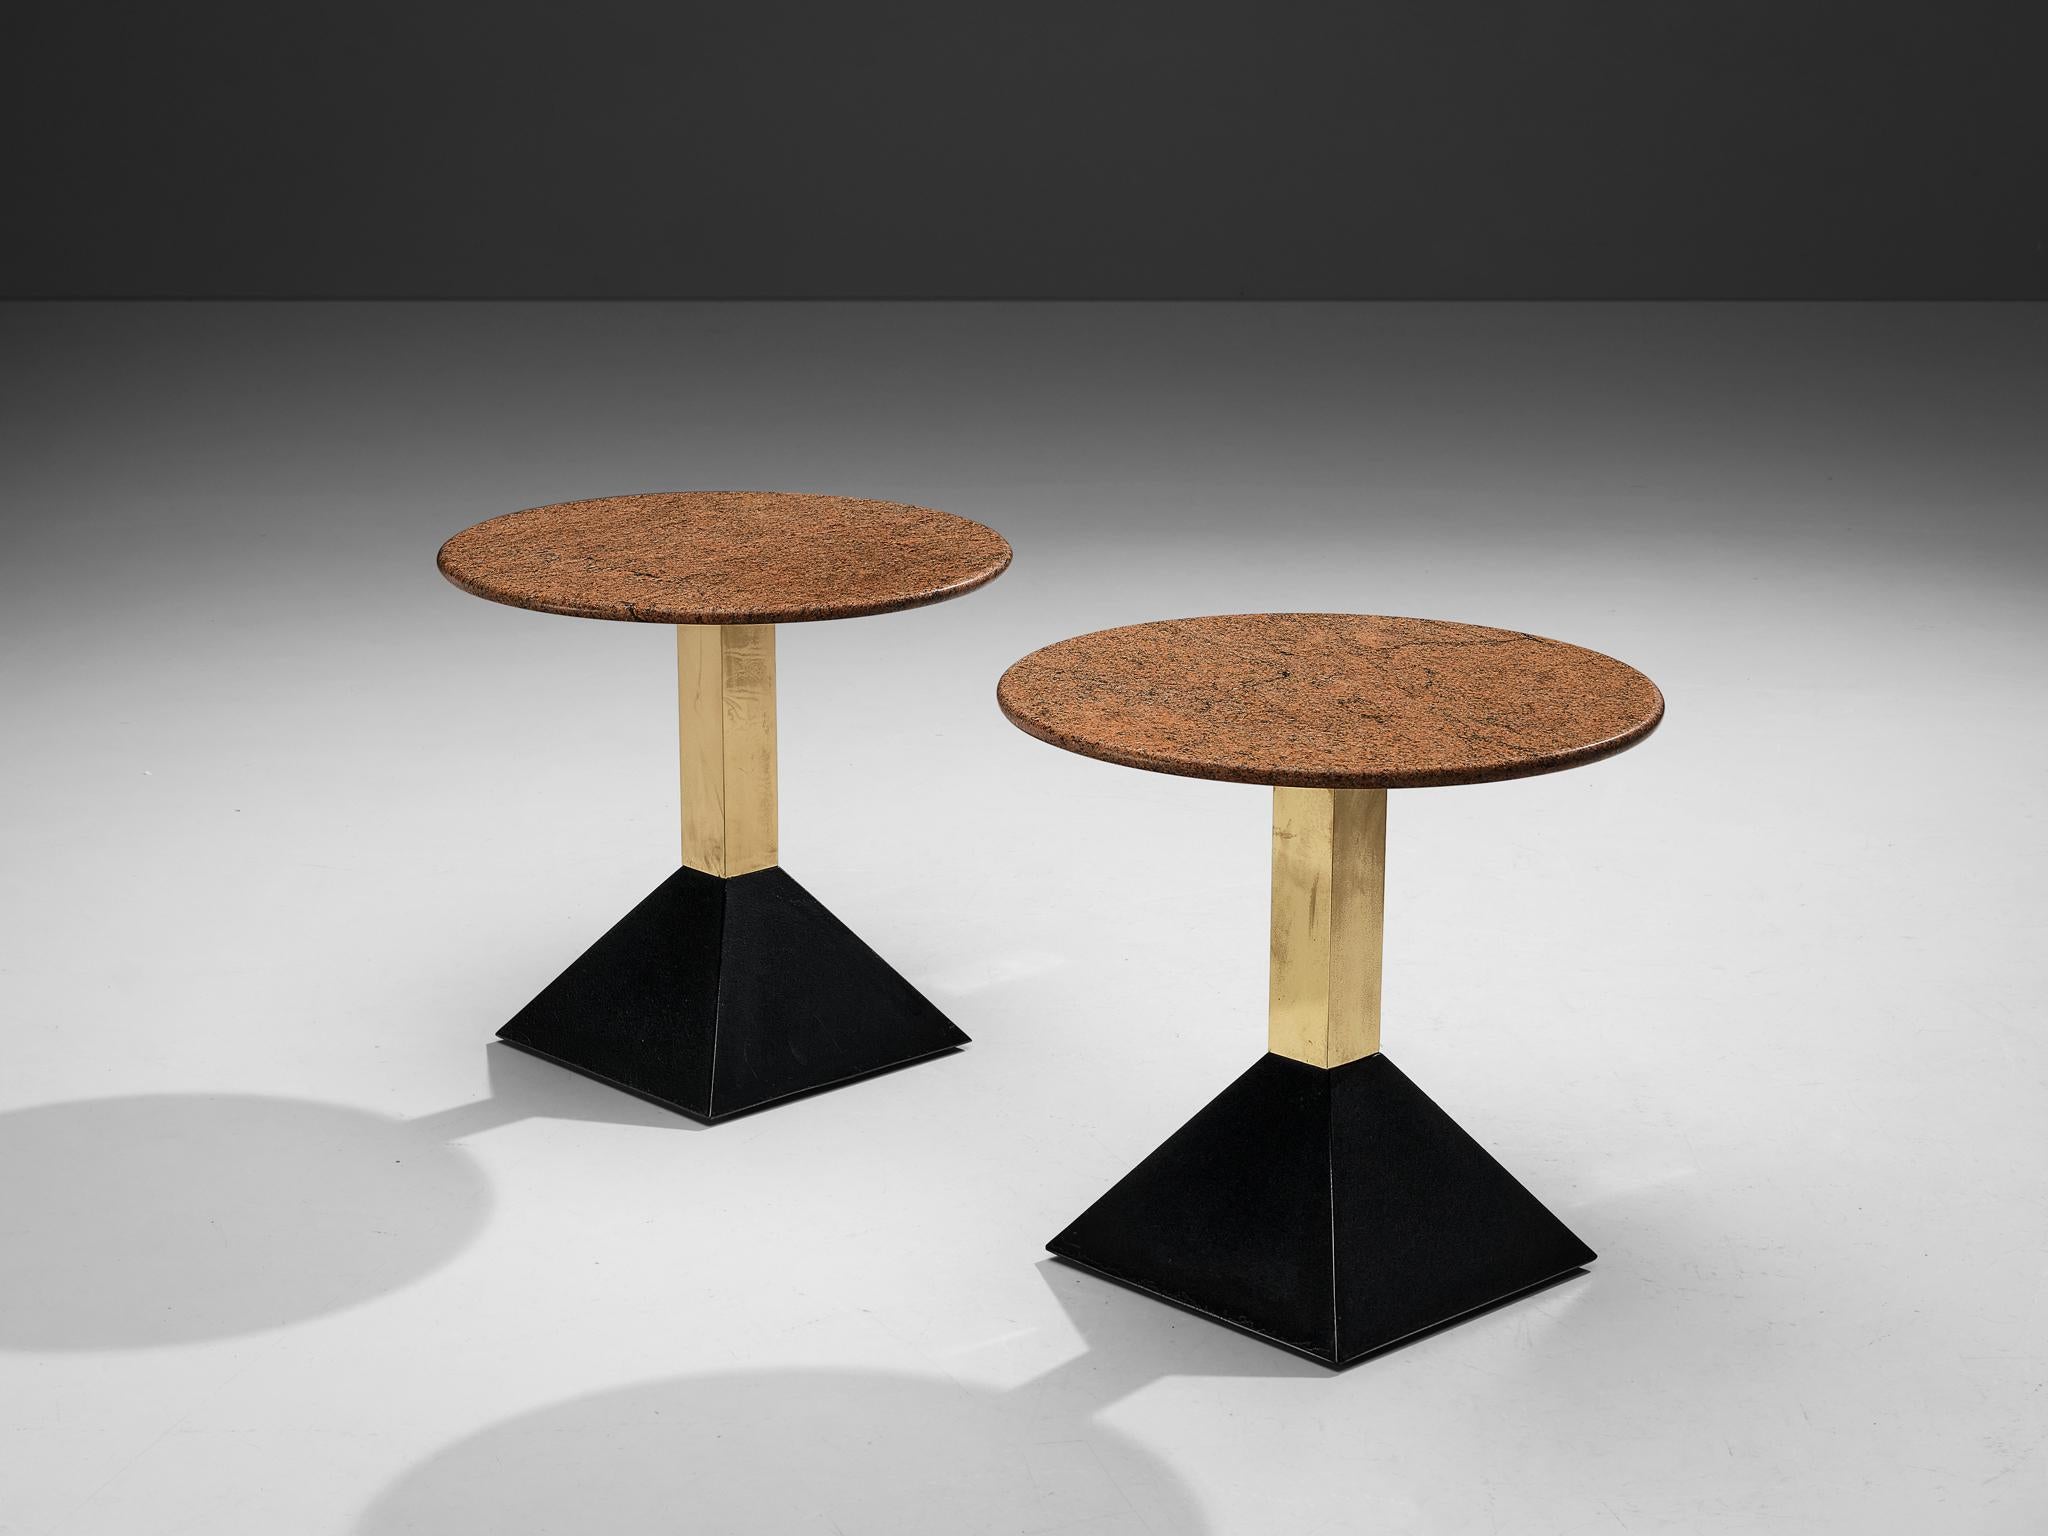 Tables d'appoint, granit, métal, laiton, Italie, années 1980

Ces tables d'appoint présentent un plateau en granit rouge de format rond. Le granit présente une surface vive. Un socle en laiton se termine par une base trapézoïdale noire en métal. La